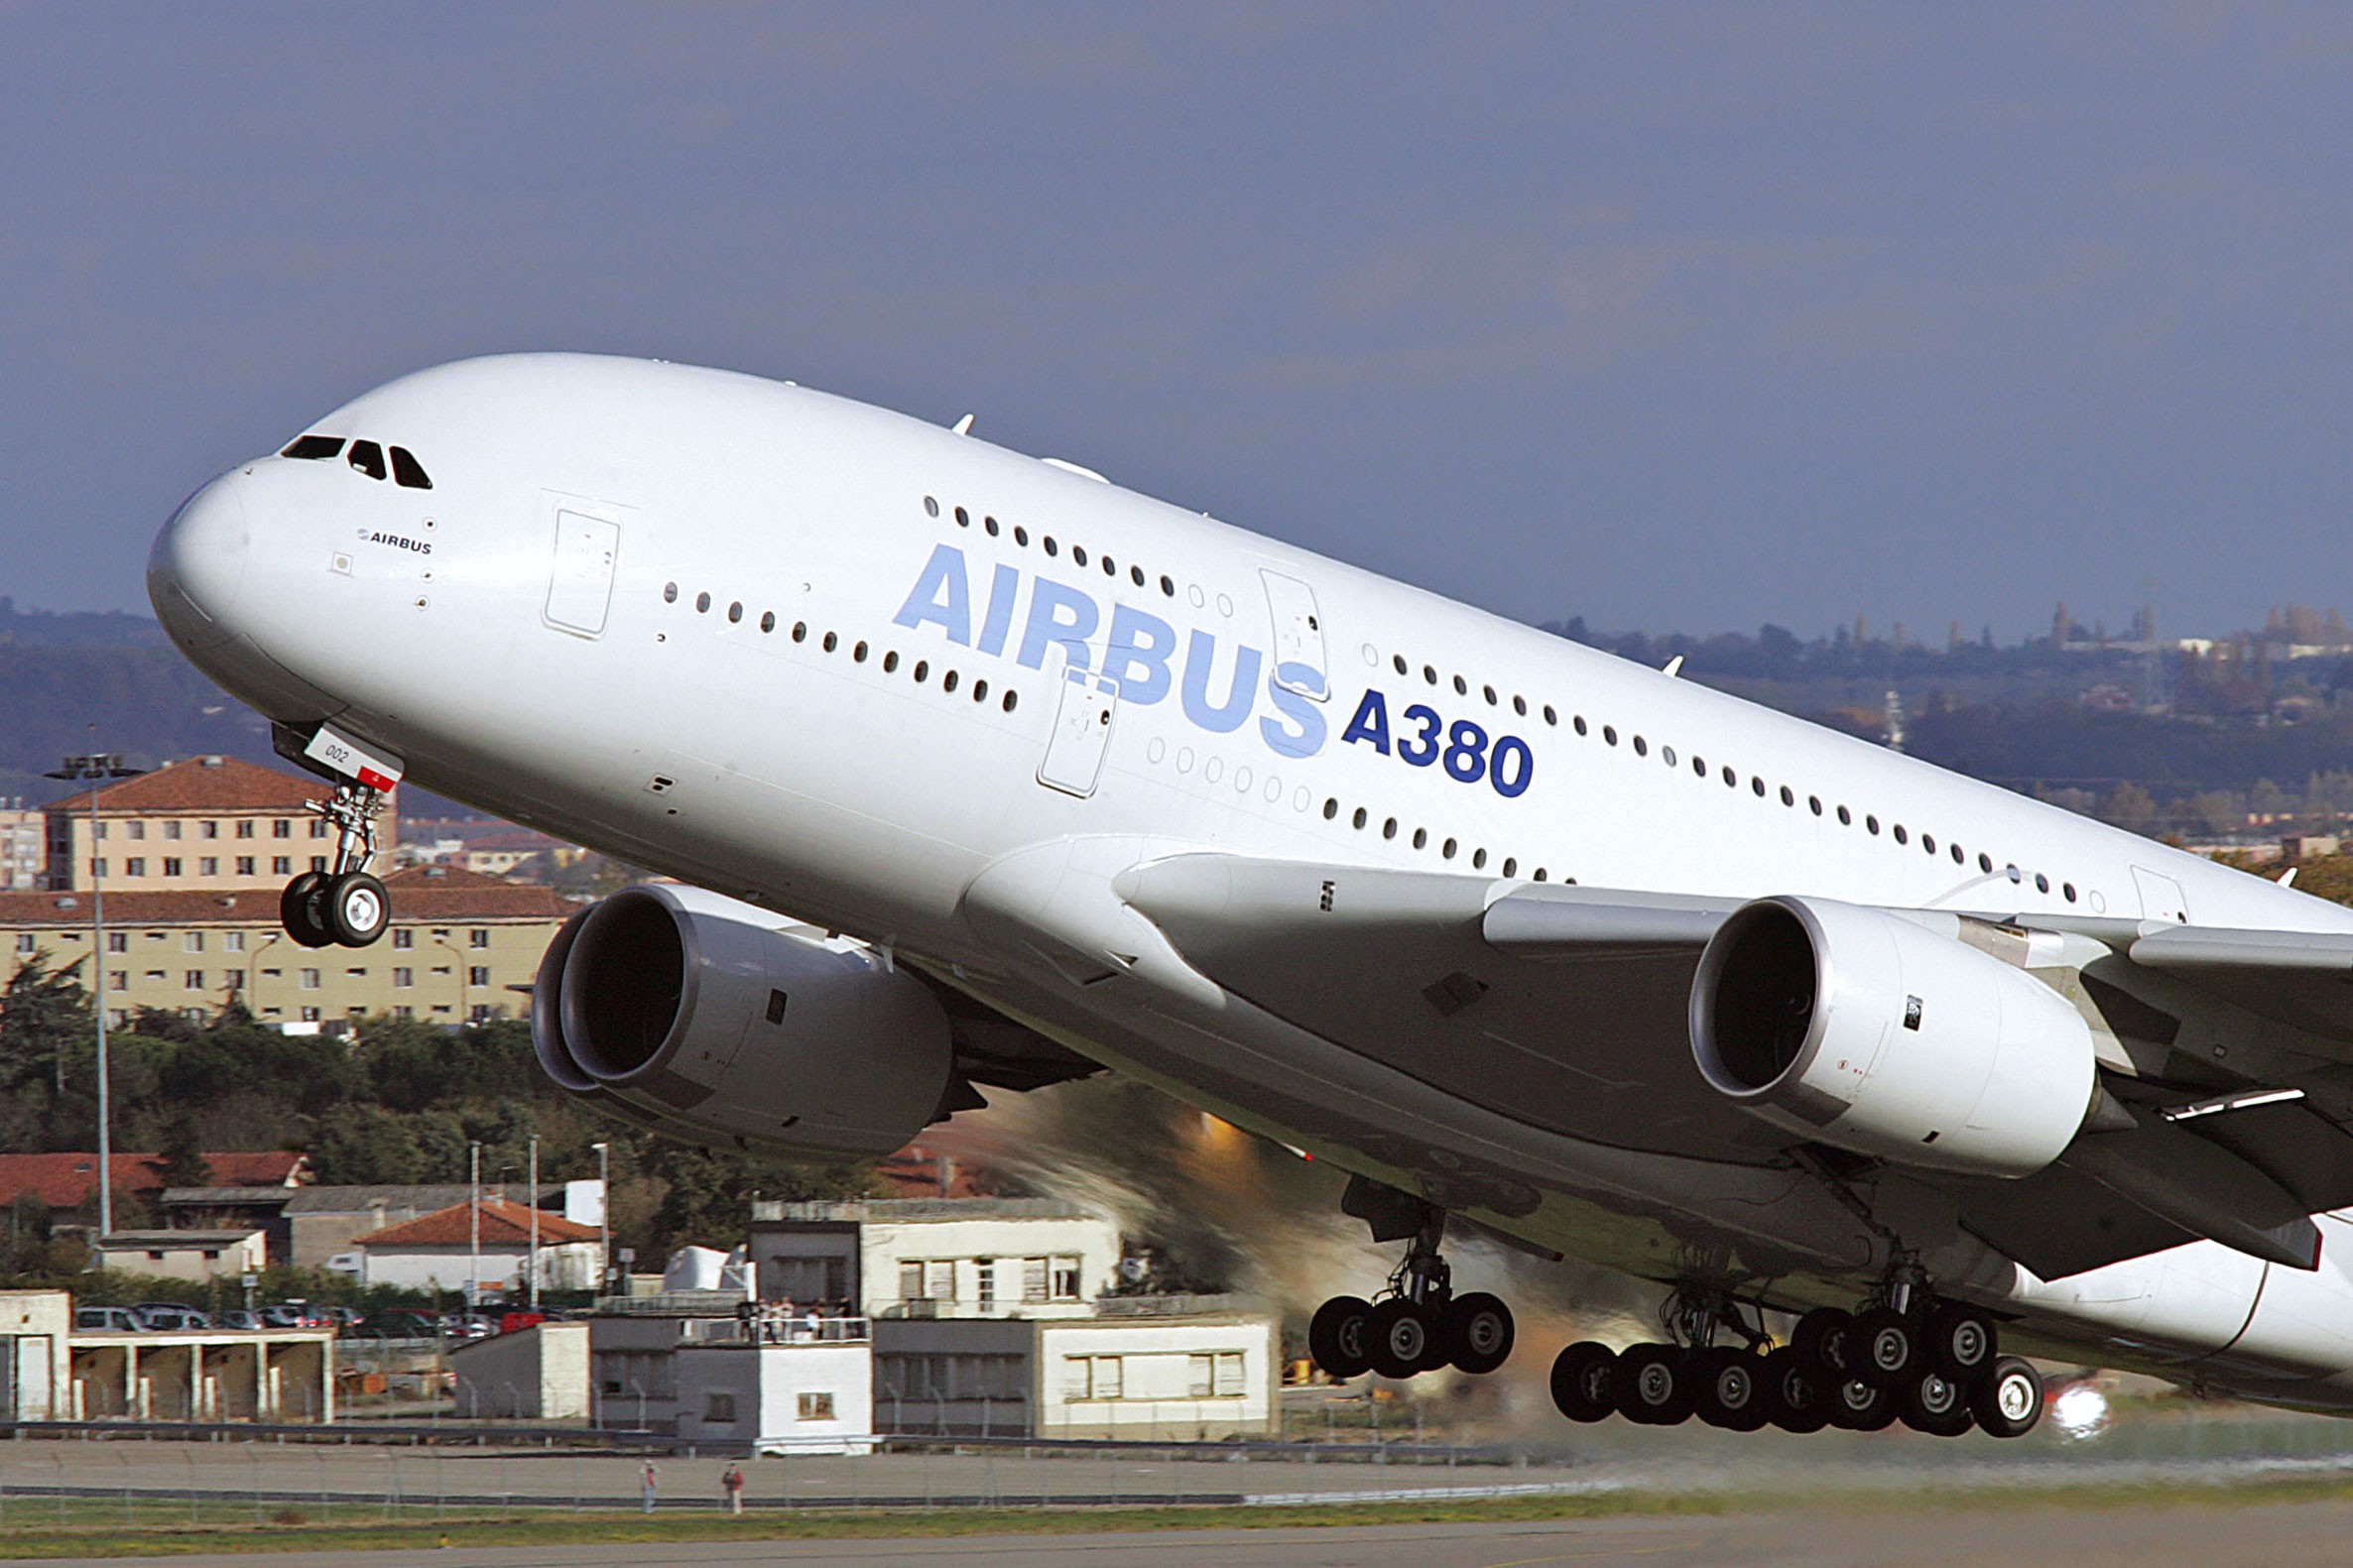 Cerca de 500 funcionários da Airbus ficam em quarentena após o surto de Covid-19 em Hamburgo thumbnail